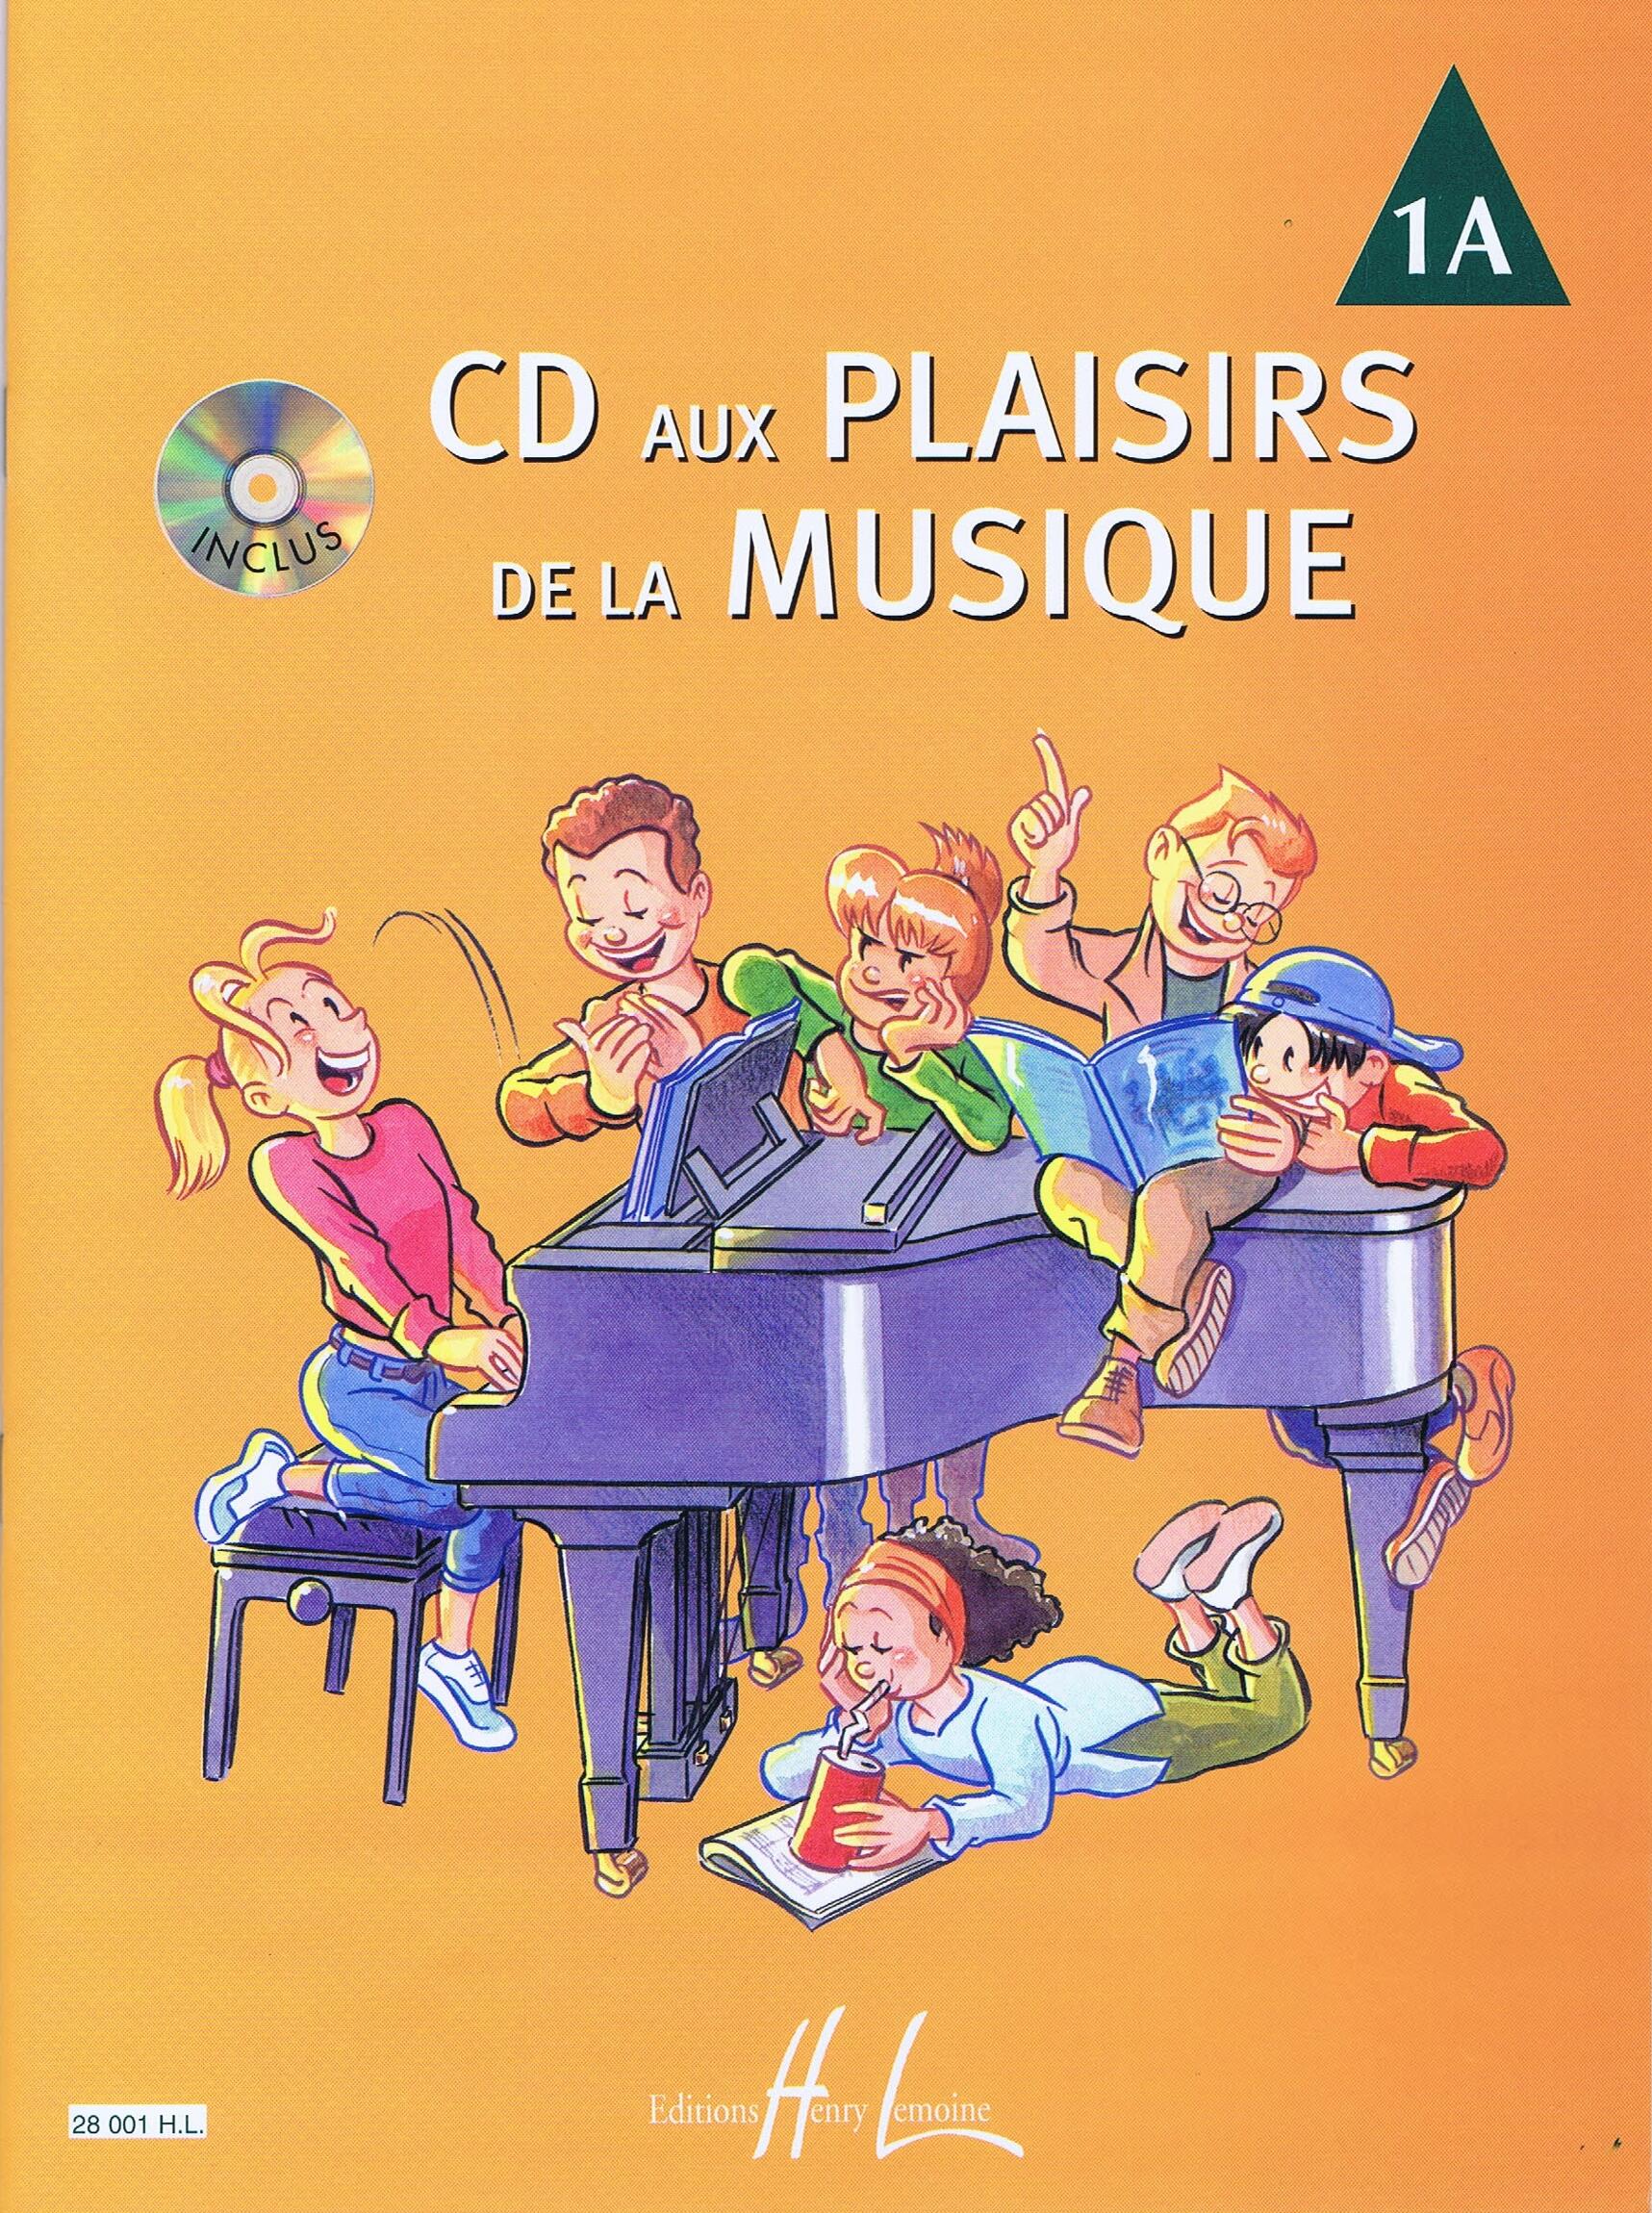 CD aux plaisirs de la musique vol. 1A : photo 1